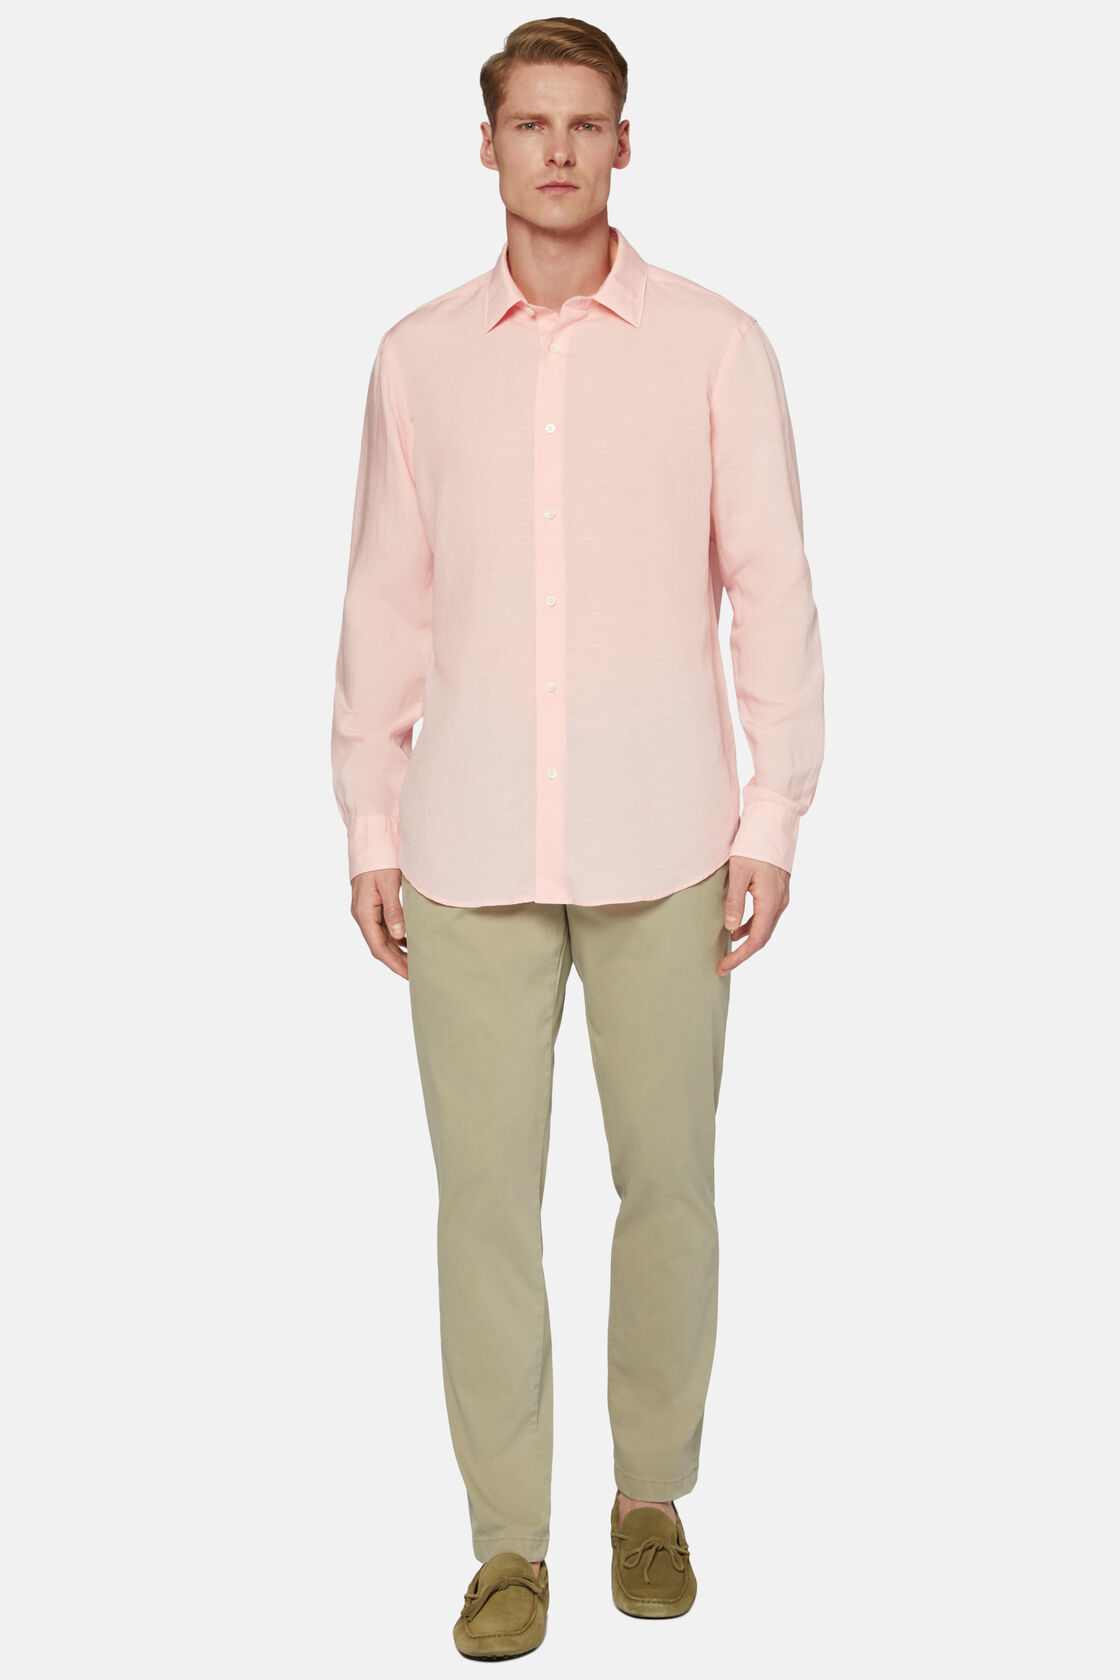 Różowa koszula z tencelu i lnu, fason klasyczny, Pink, hi-res